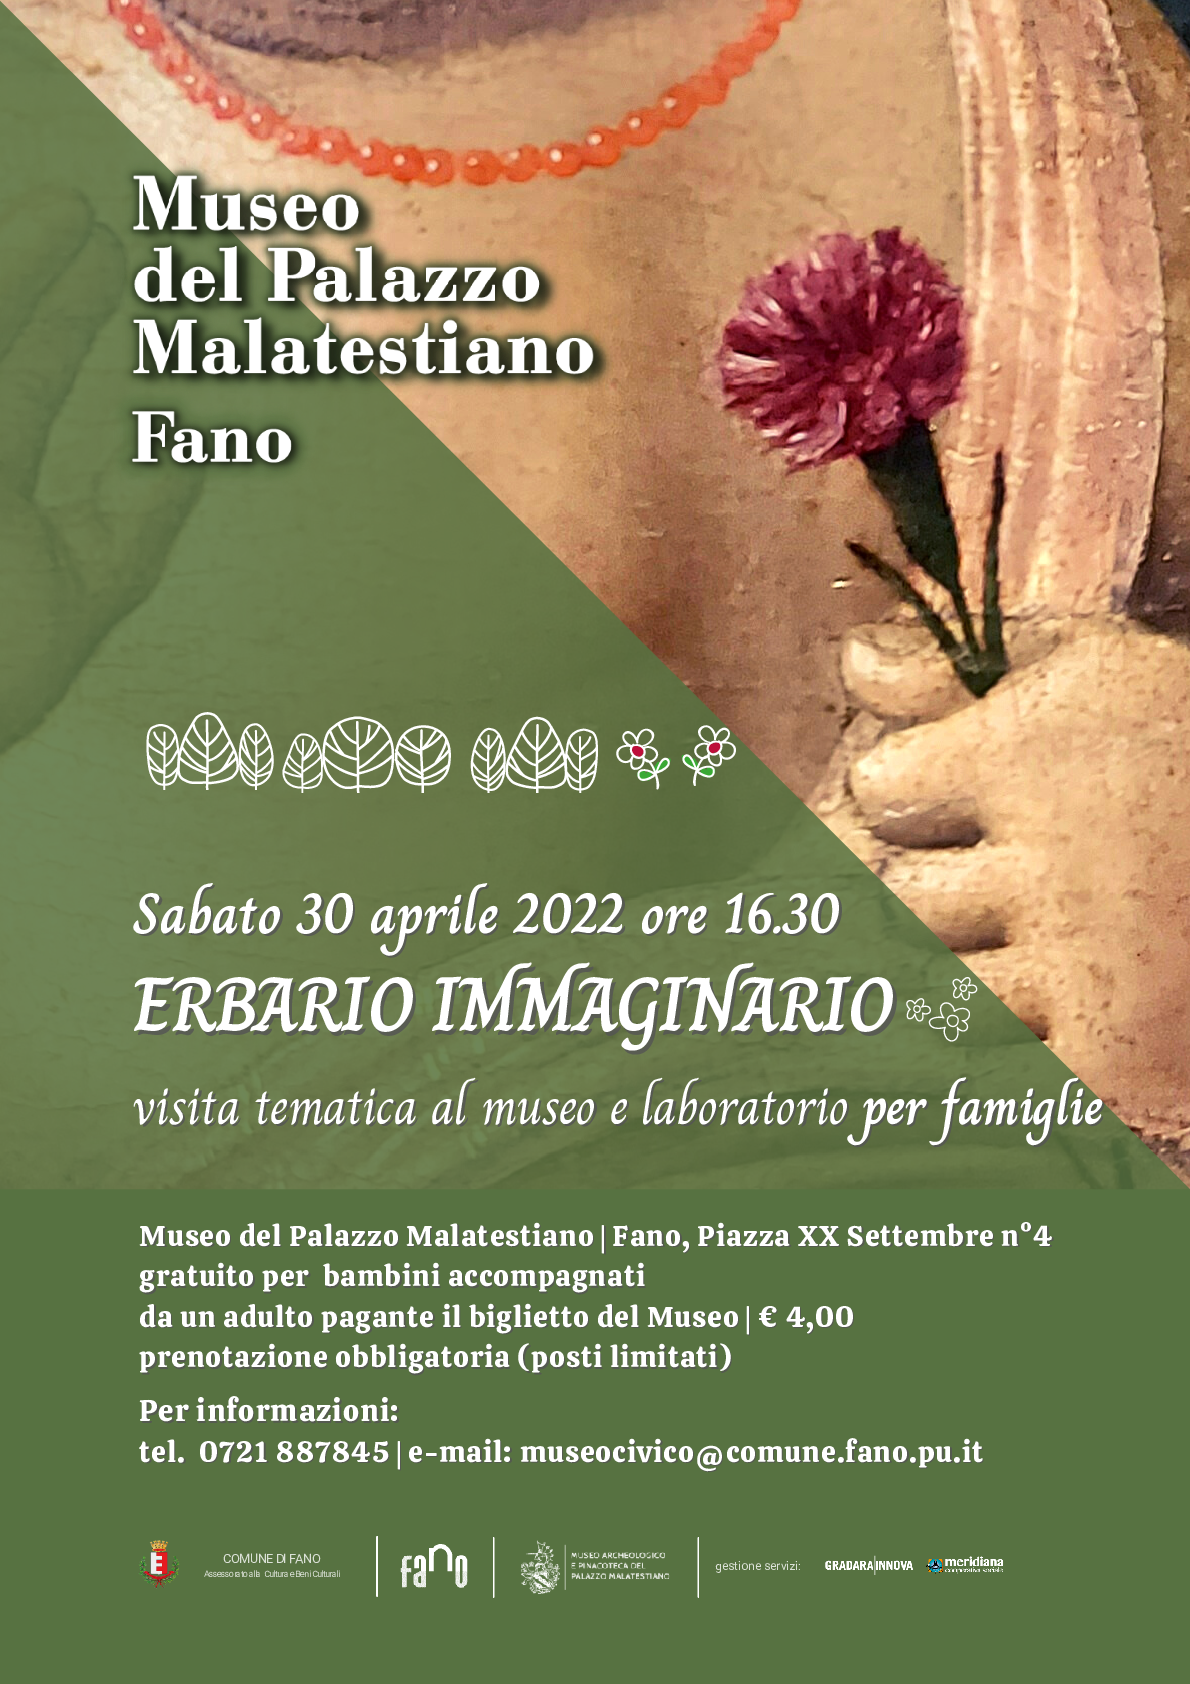 Sabato 30 aprile alle ore 16,30 presso il Museo del Palazzo Malatestiano ci sarà una visita tematica e un laboratorio per famiglie dal titolo "Erbario immaginario".